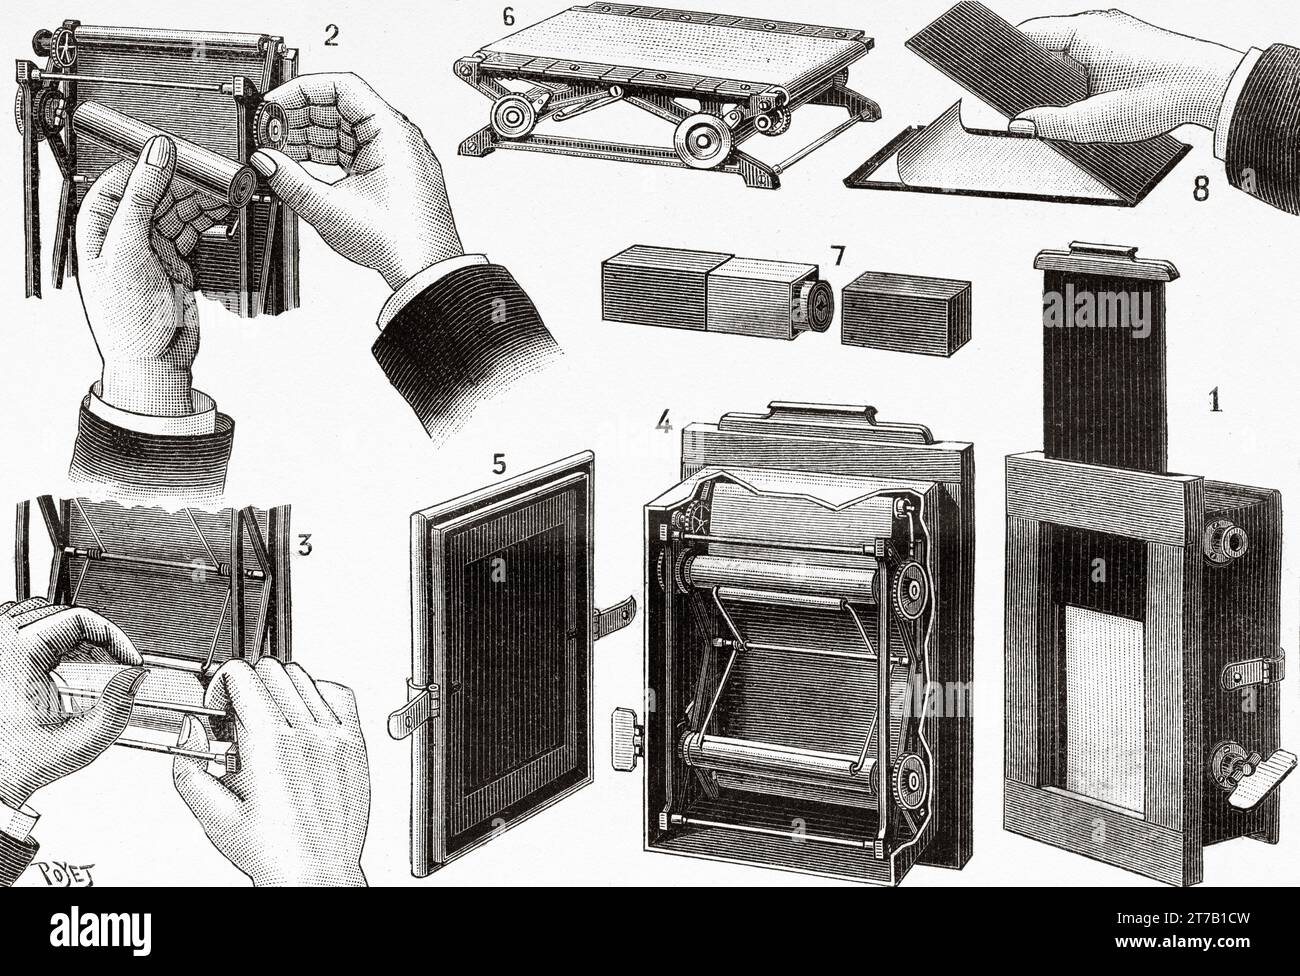 Schéma montrant comment insérer un rouleau de film négatif Eastman dans un appareil photo. Cadre photo Eastman Kodak Company avec papier négatif. Illustration ancienne de Louis Poyet (1846-1913) tirée de la nature 1887 Banque D'Images